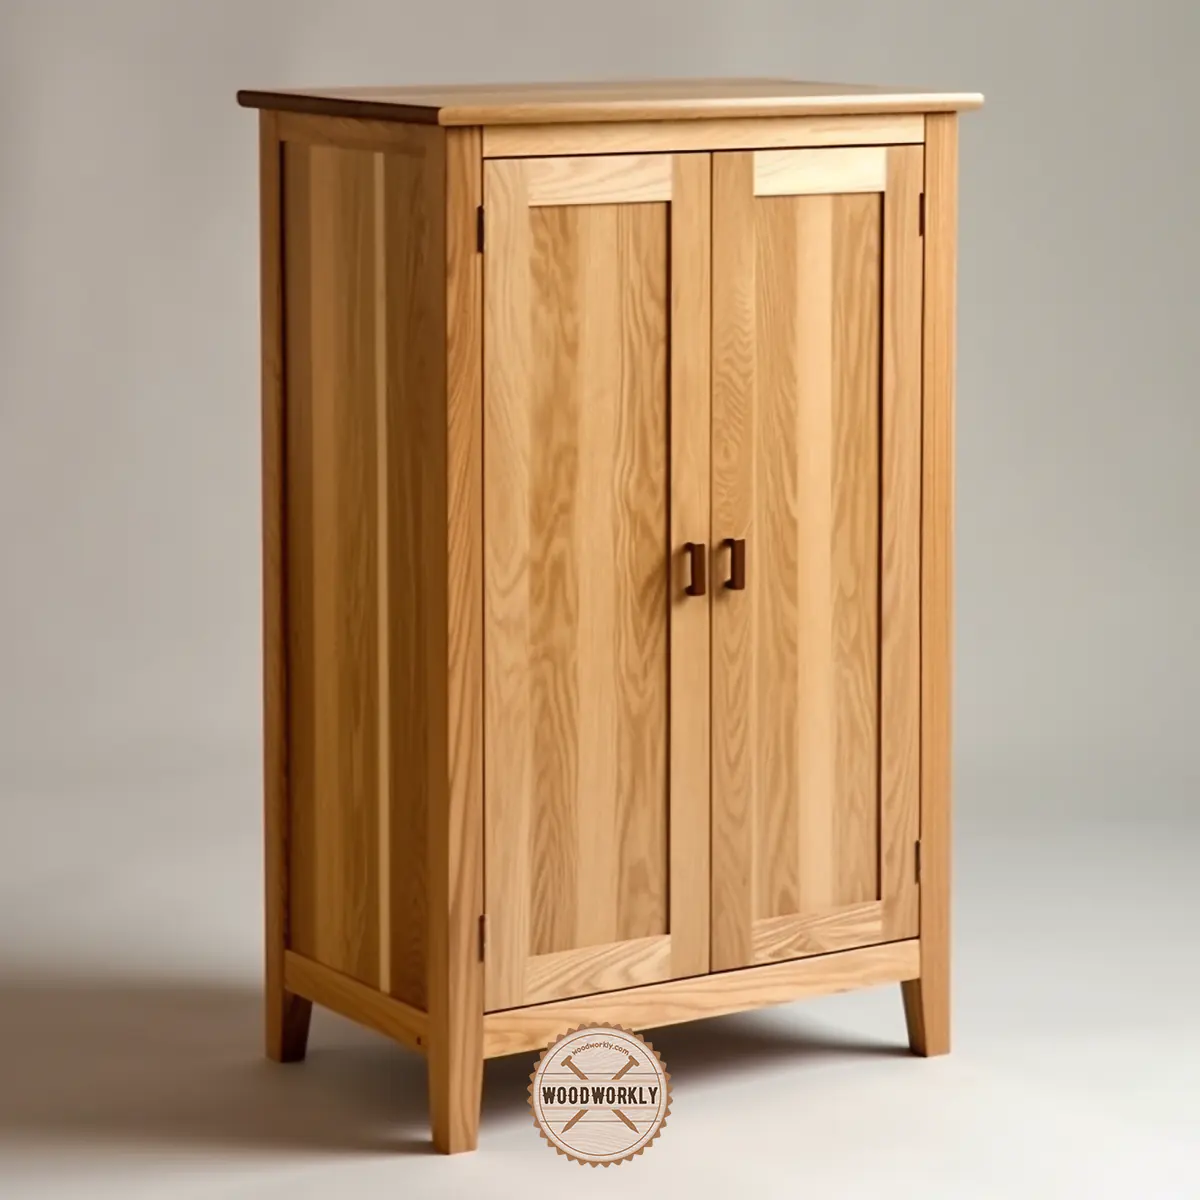 Ash wood cupboard